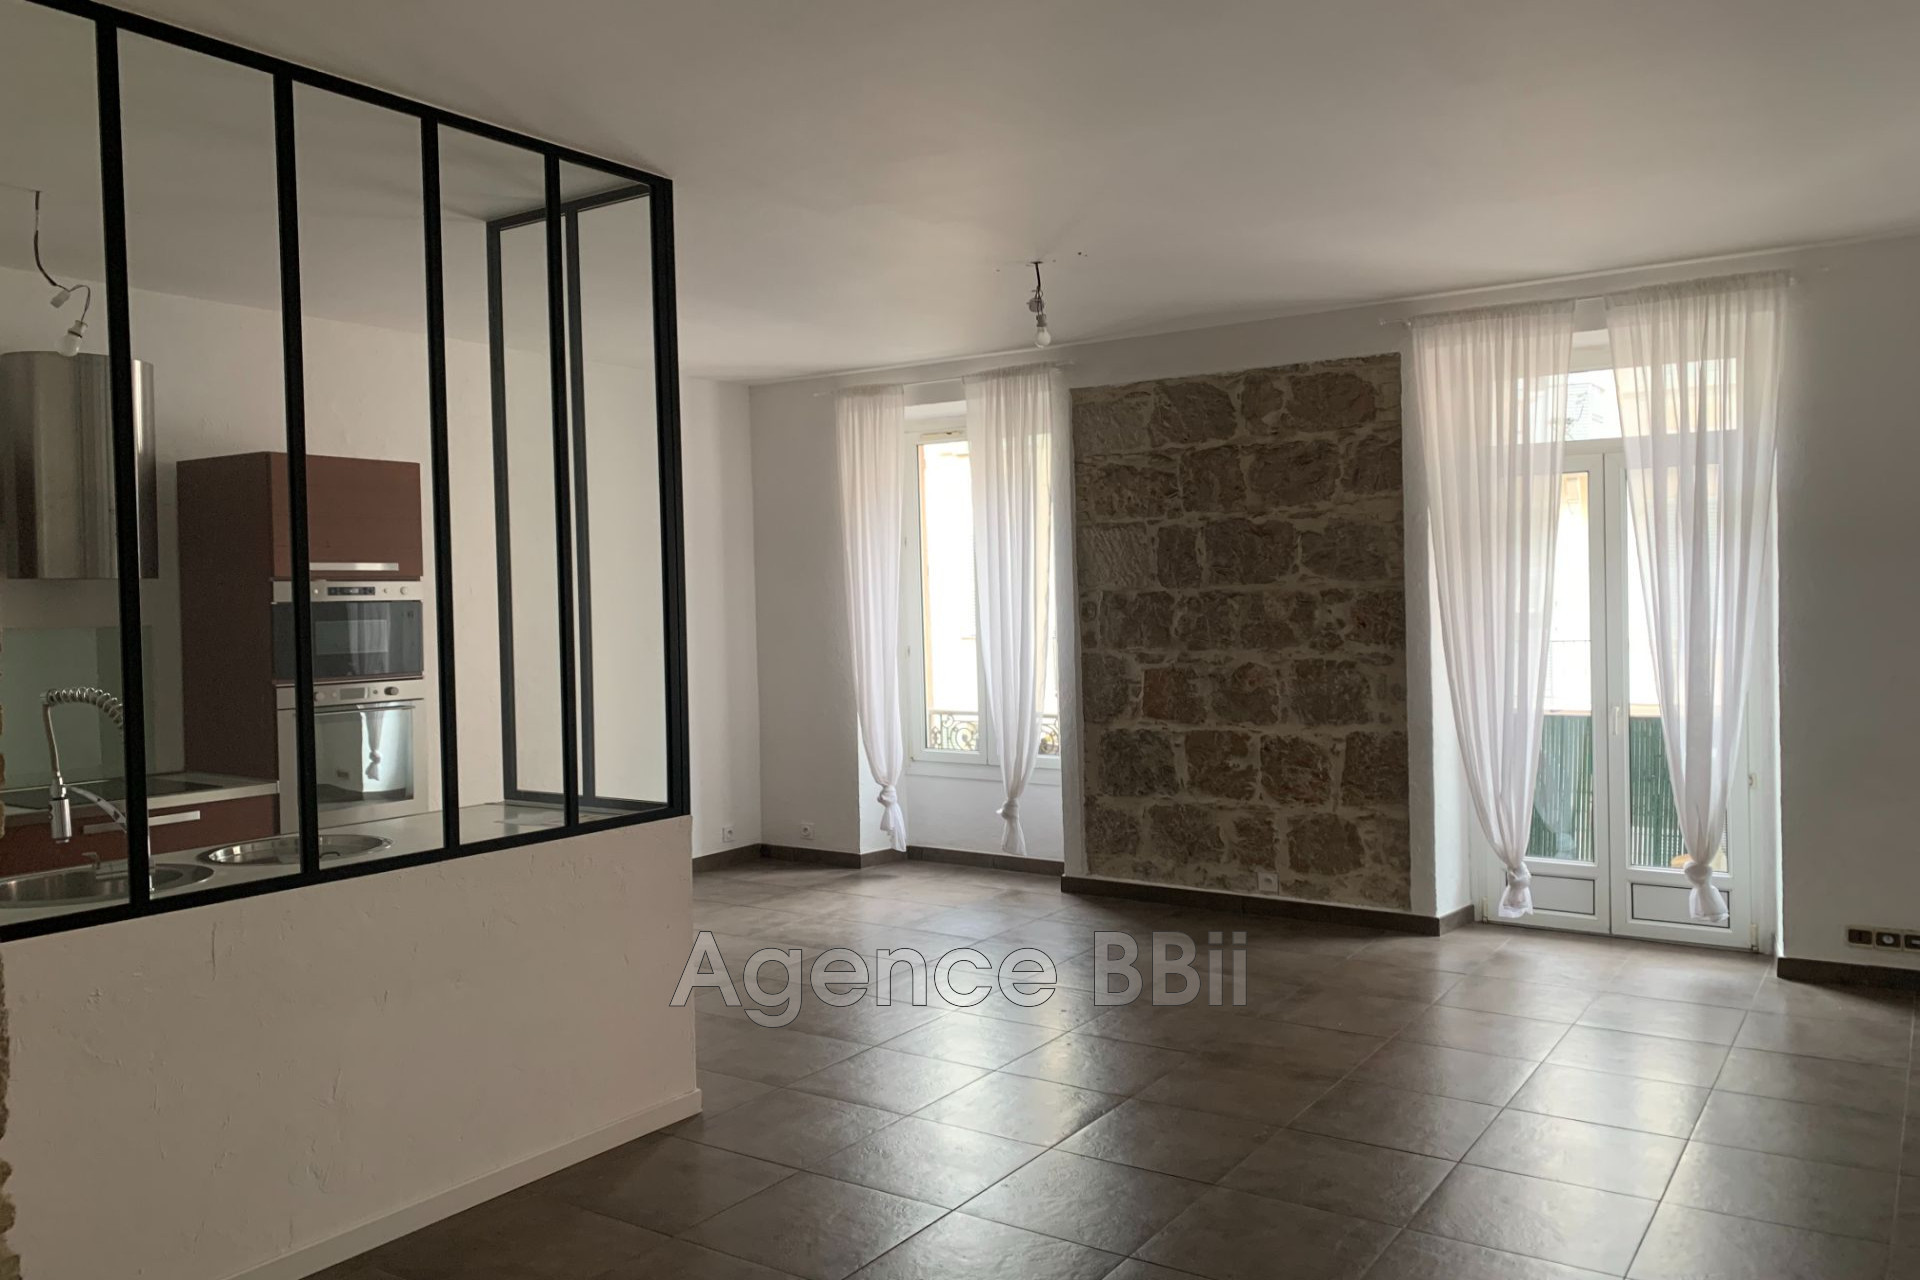 Vente Appartement 76m² 4 Pièces à Nice (06000) - BBII